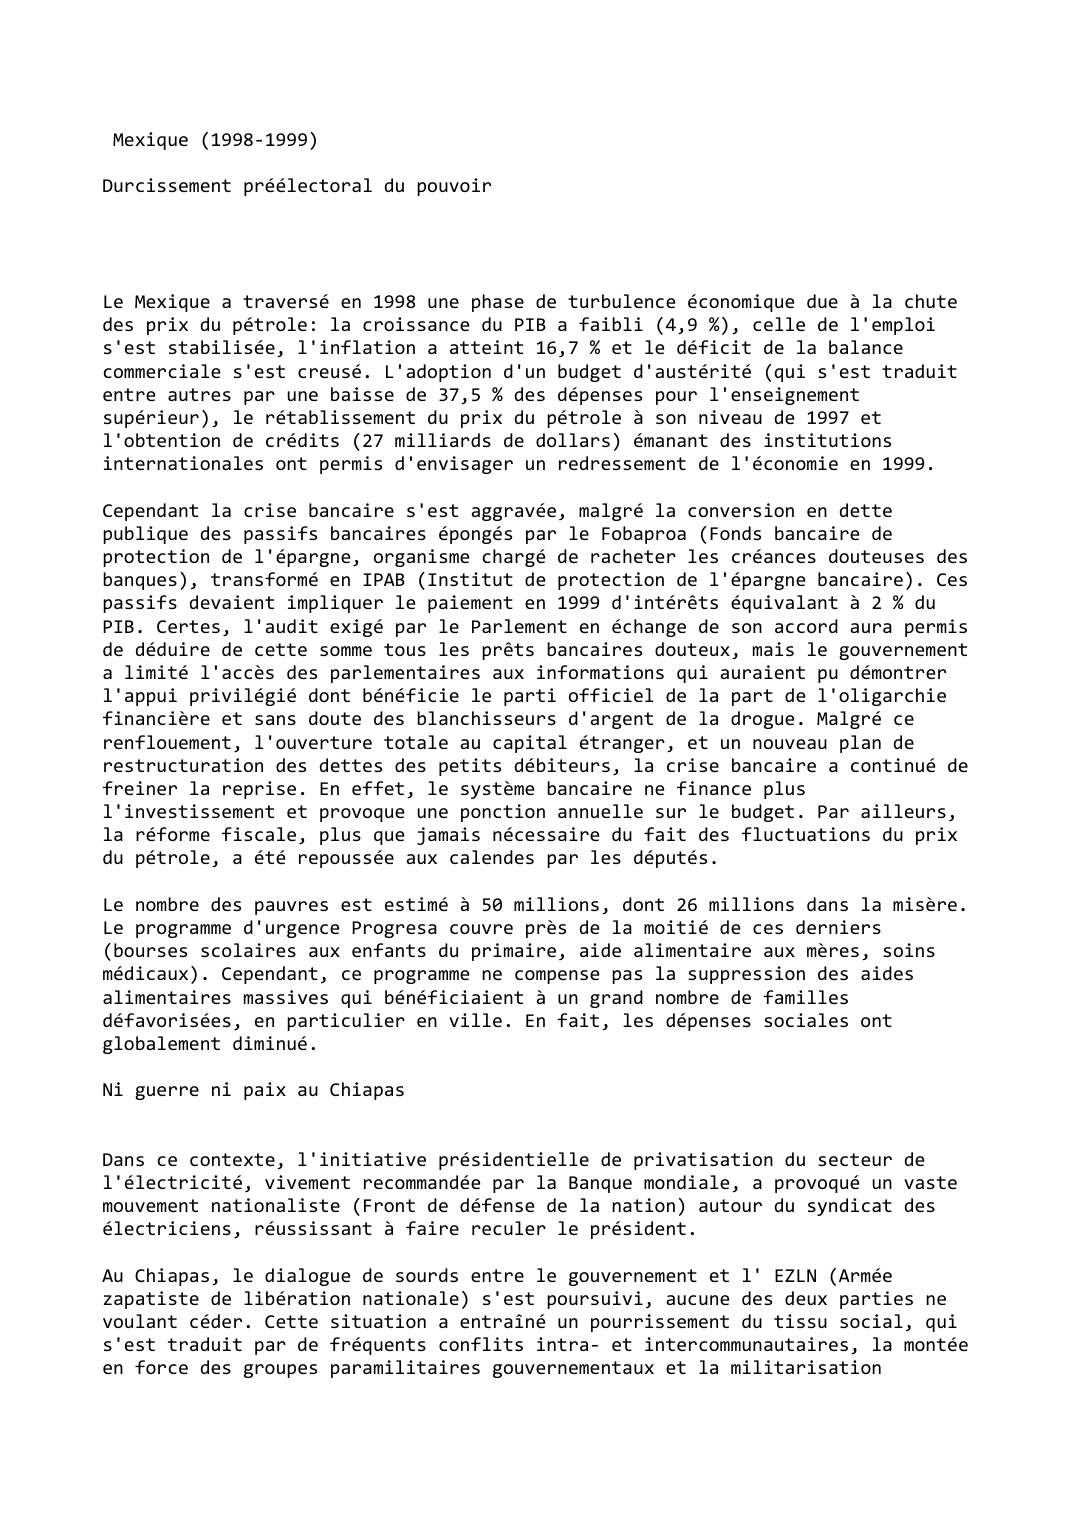 Prévisualisation du document Mexique (1998-1999)

Durcissement préélectoral du pouvoir